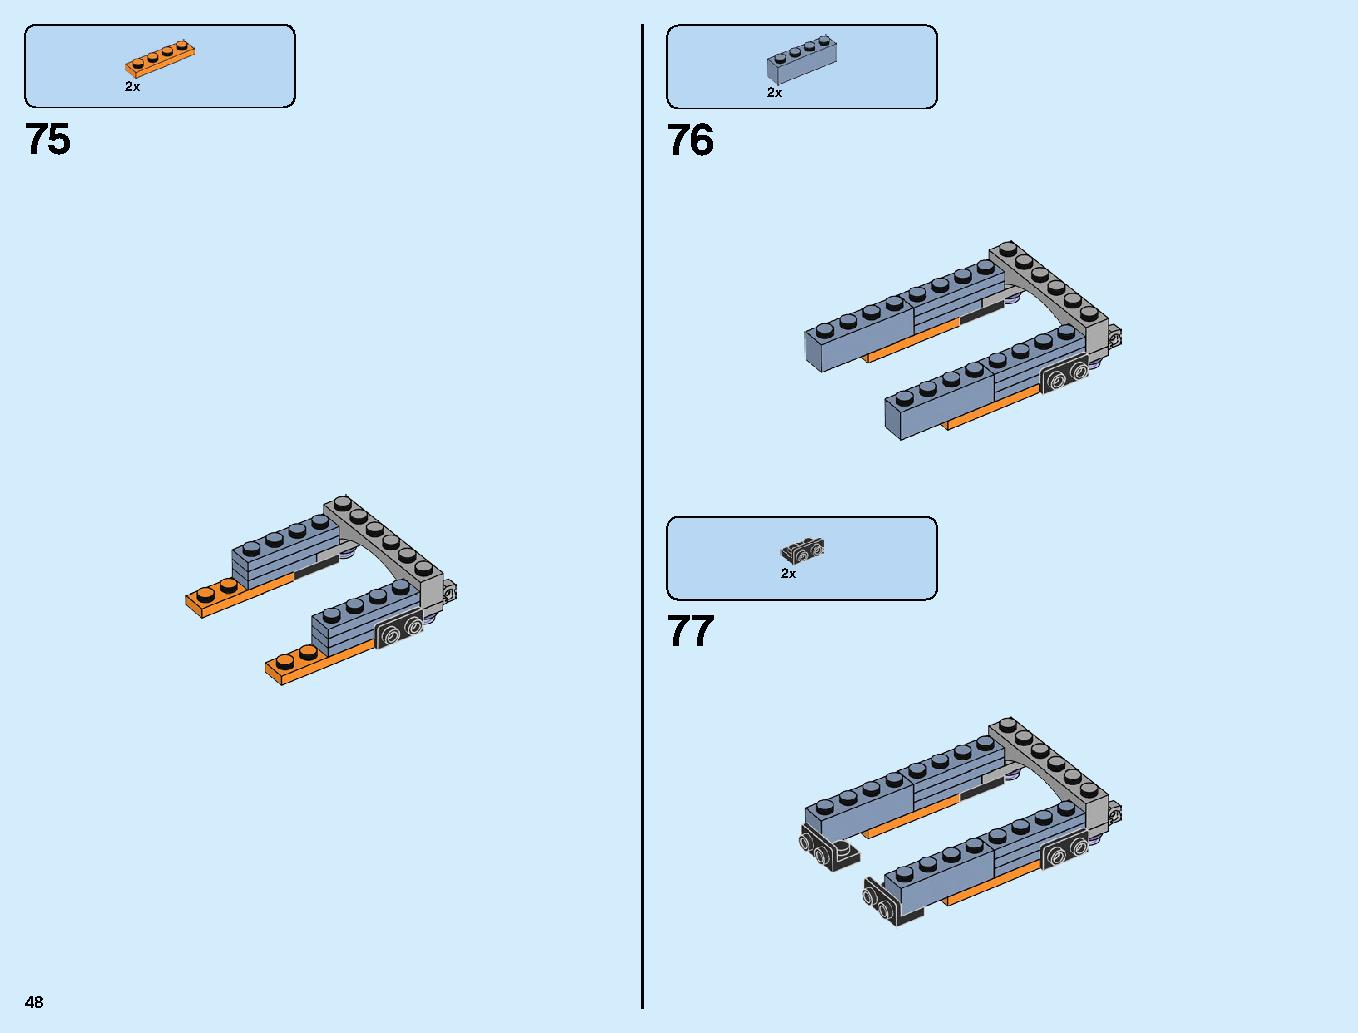 어벤져스 타노스: 최후의 전투 76107 레고 세트 제품정보 레고 조립설명서 48 page